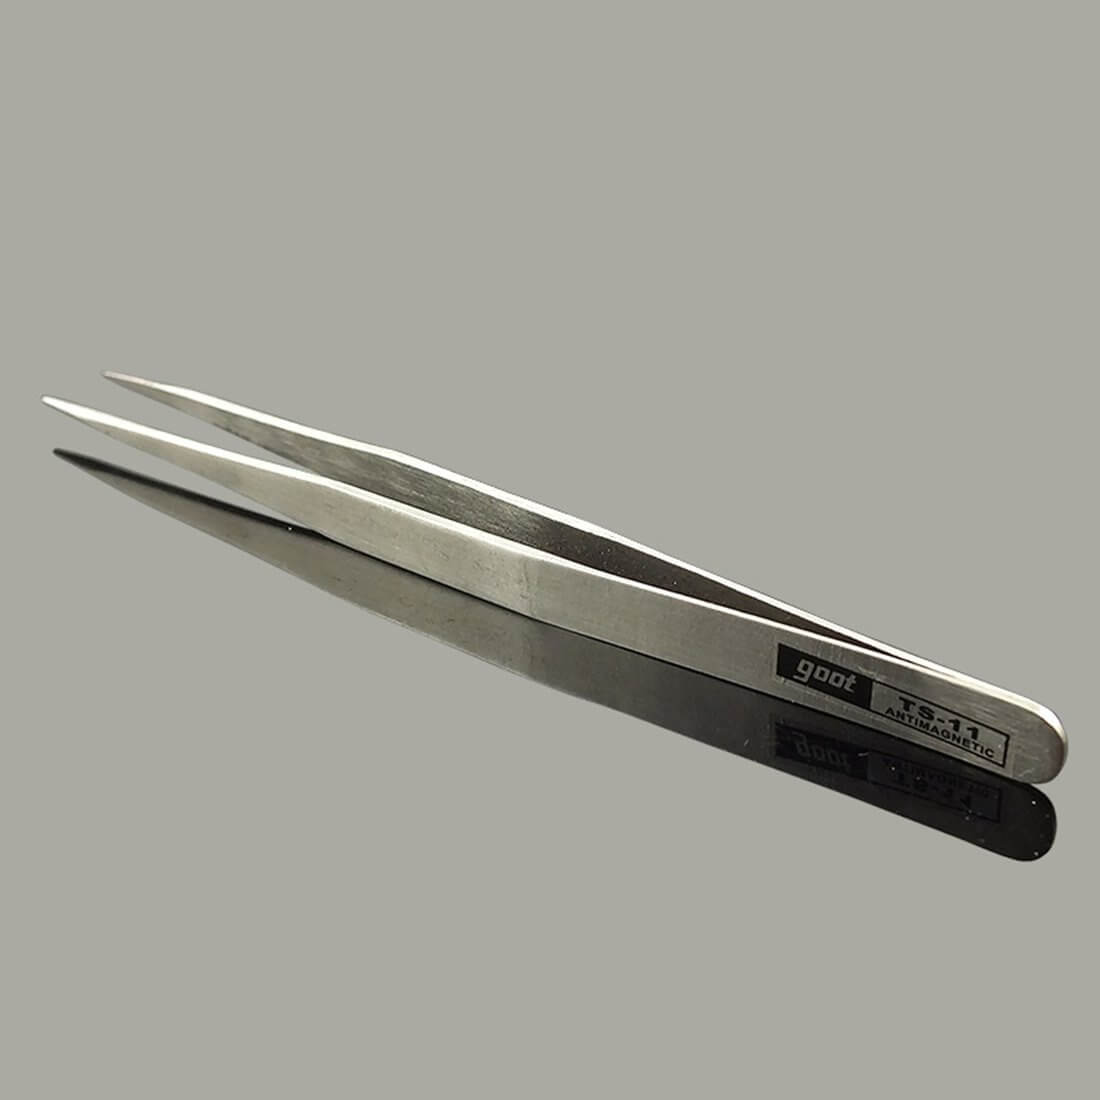 TS-11 Steel Straight Tweezers